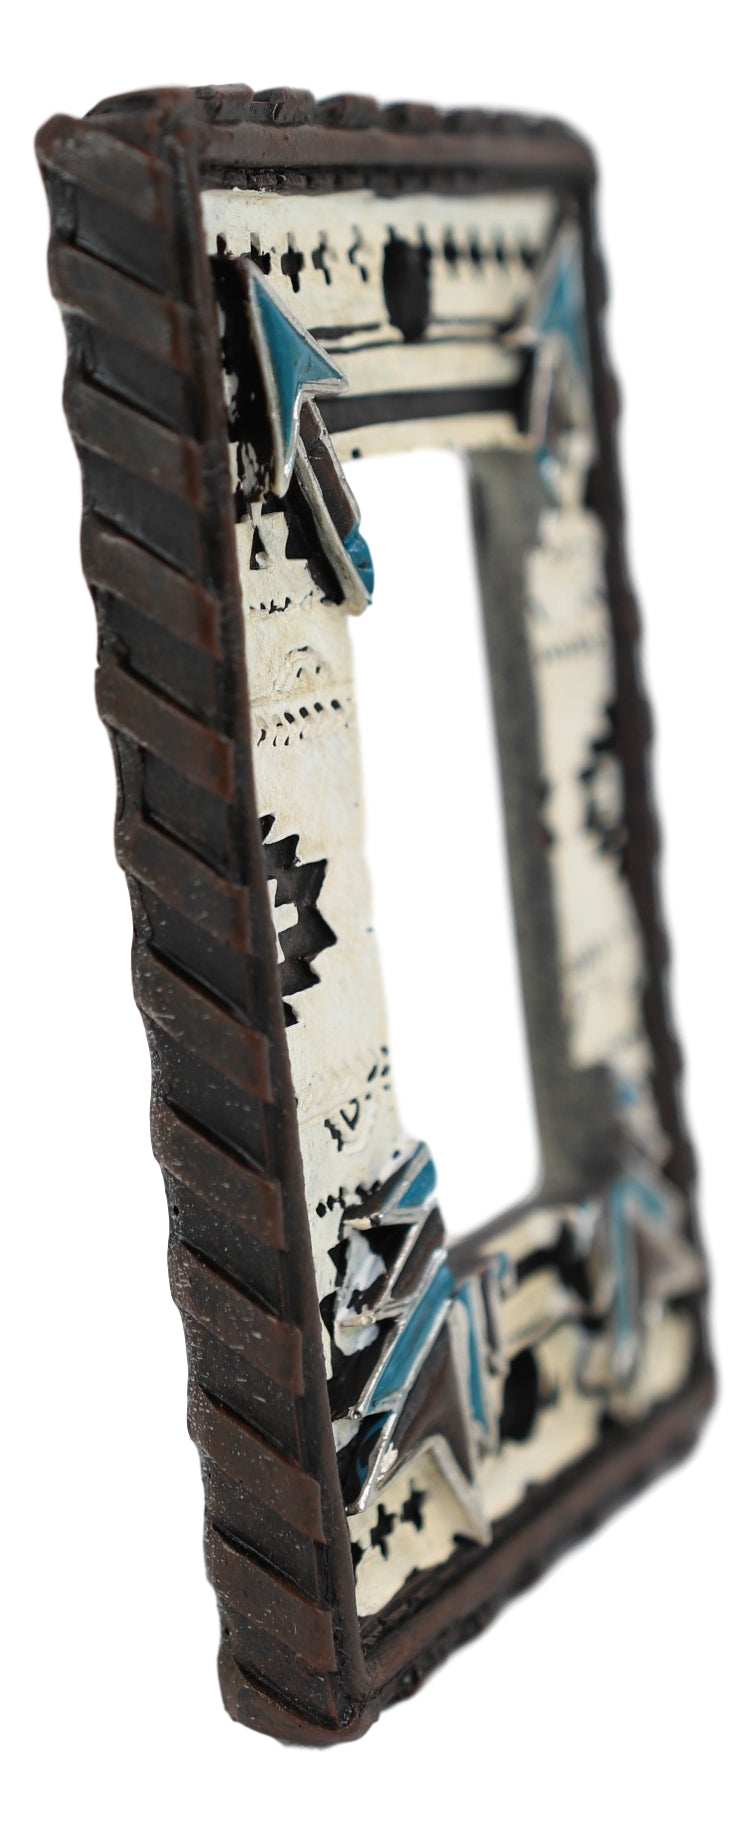 Set Of 2 Western Navajo Crossed Turquoise Arrows Wall Single Rocker Switch Plate